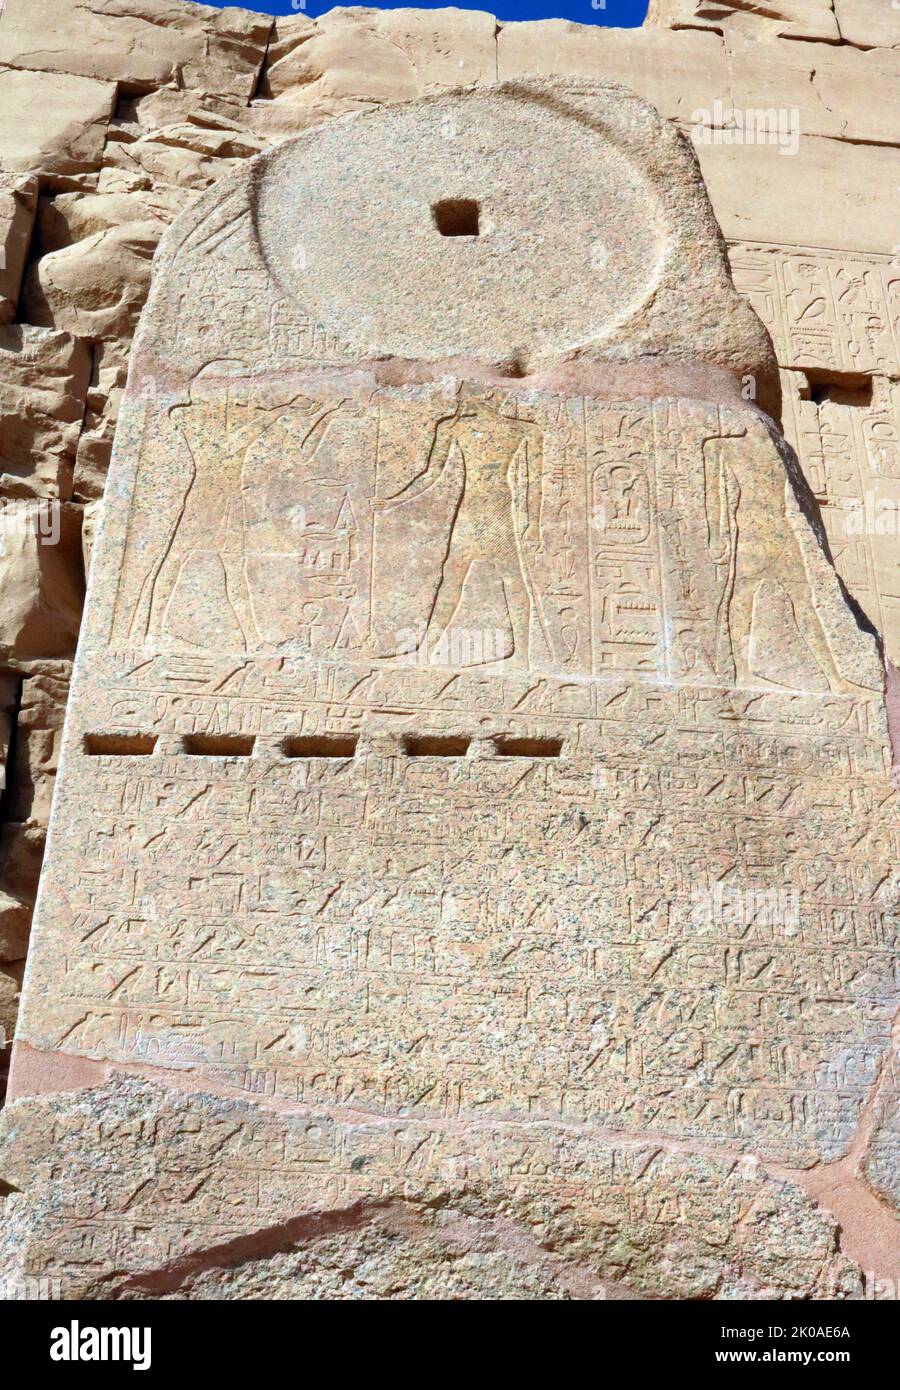 Stèle du règne de Menmaatre Seti I, décrivant ses victoires militaires. 19th dynastie, Temple de Karnak, Égypte, découverte en 2020. SETI était le deuxième pharaon de la dynastie égyptienne de 19th, pendant la période du Nouveau Royaume, régnant c.1294 ou 1290 BC à 1279 BC. Il était le fils de Ramsès I et de Sitre, et le père de Ramsès II Banque D'Images